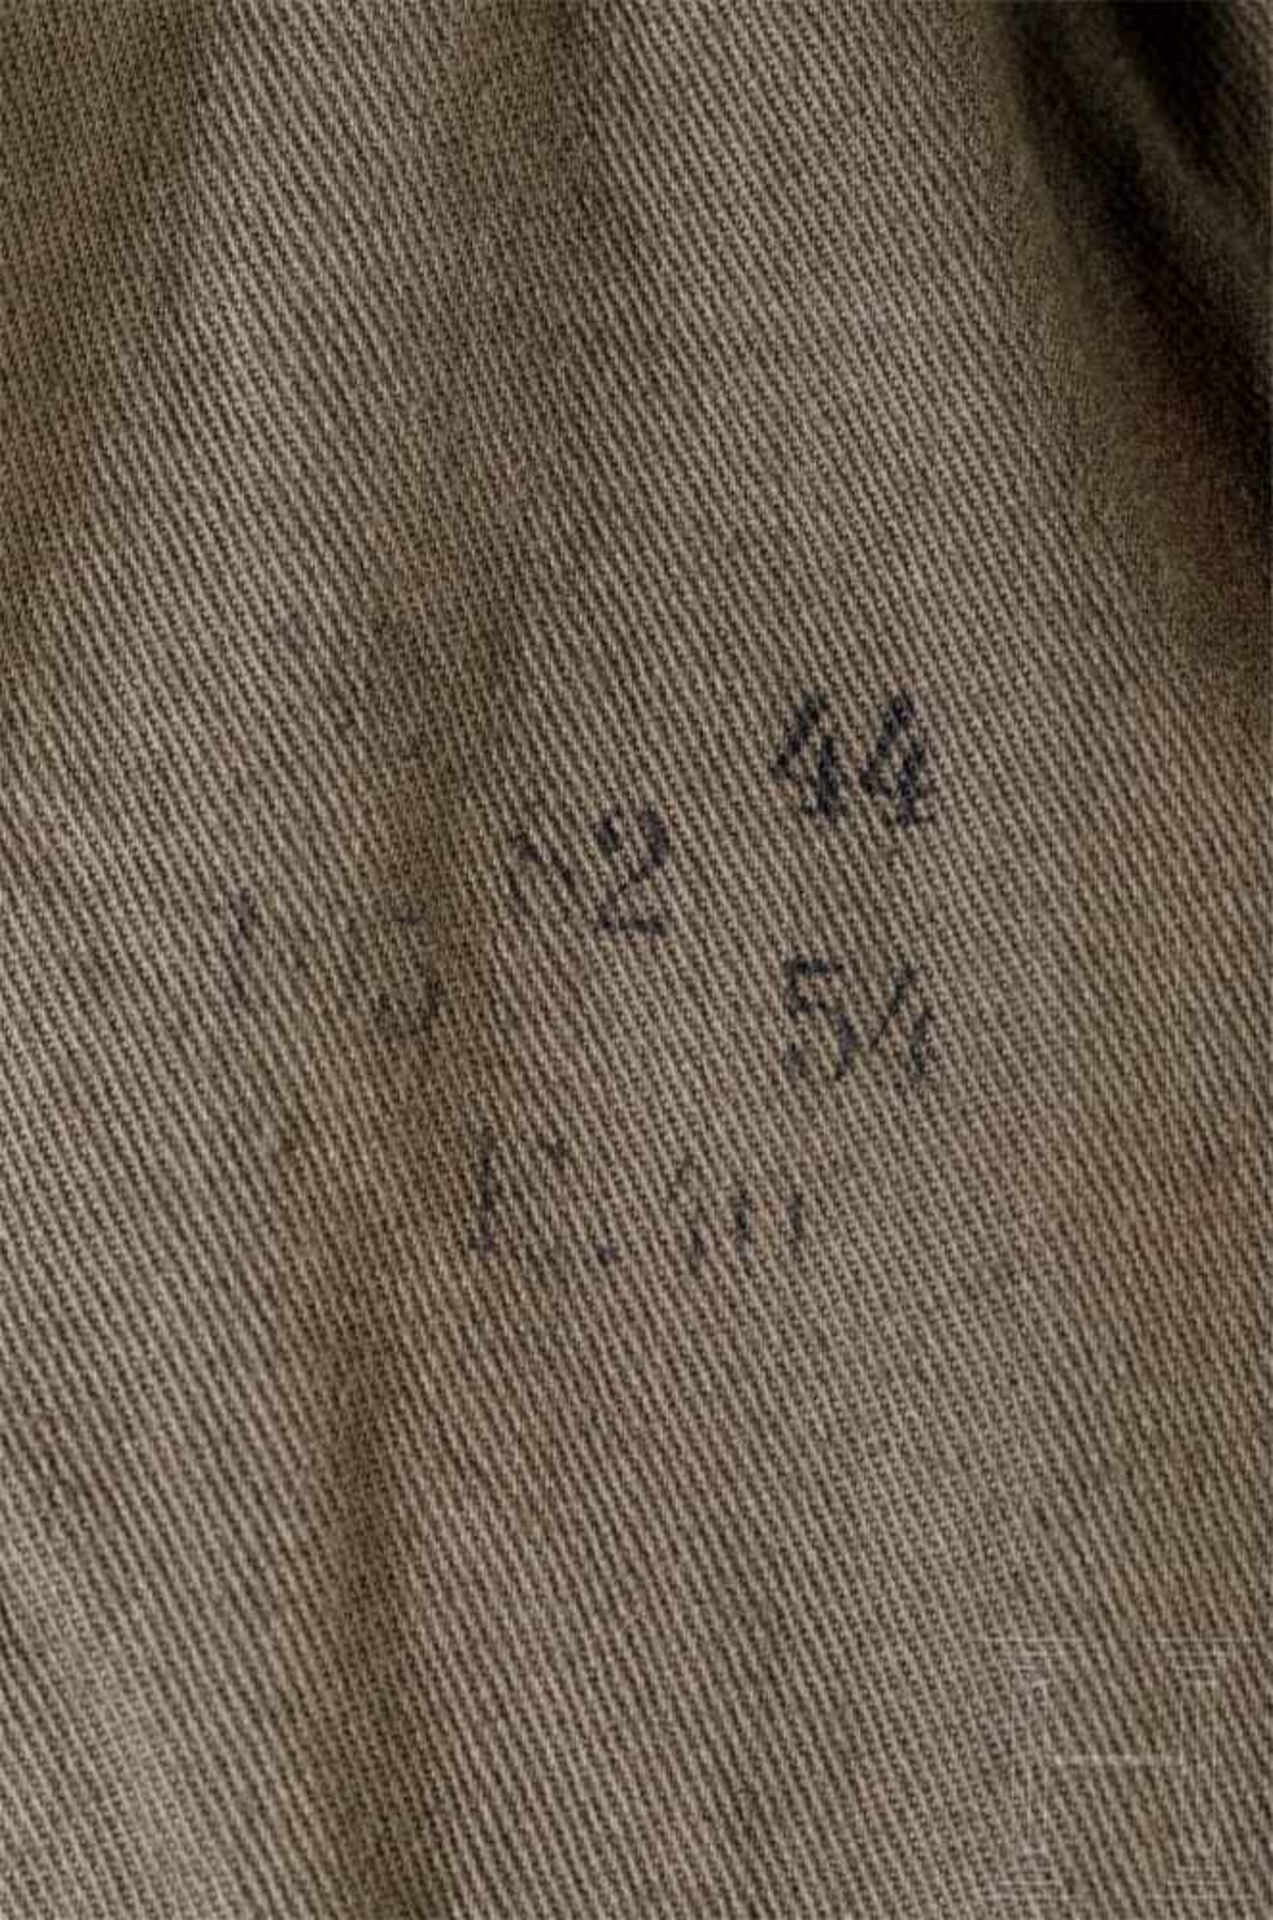 Mantel für Jungschützen an der Unteroffiziersvorschule IVVorschriftsmäßiges Kammerstück mit nur - Bild 3 aus 3